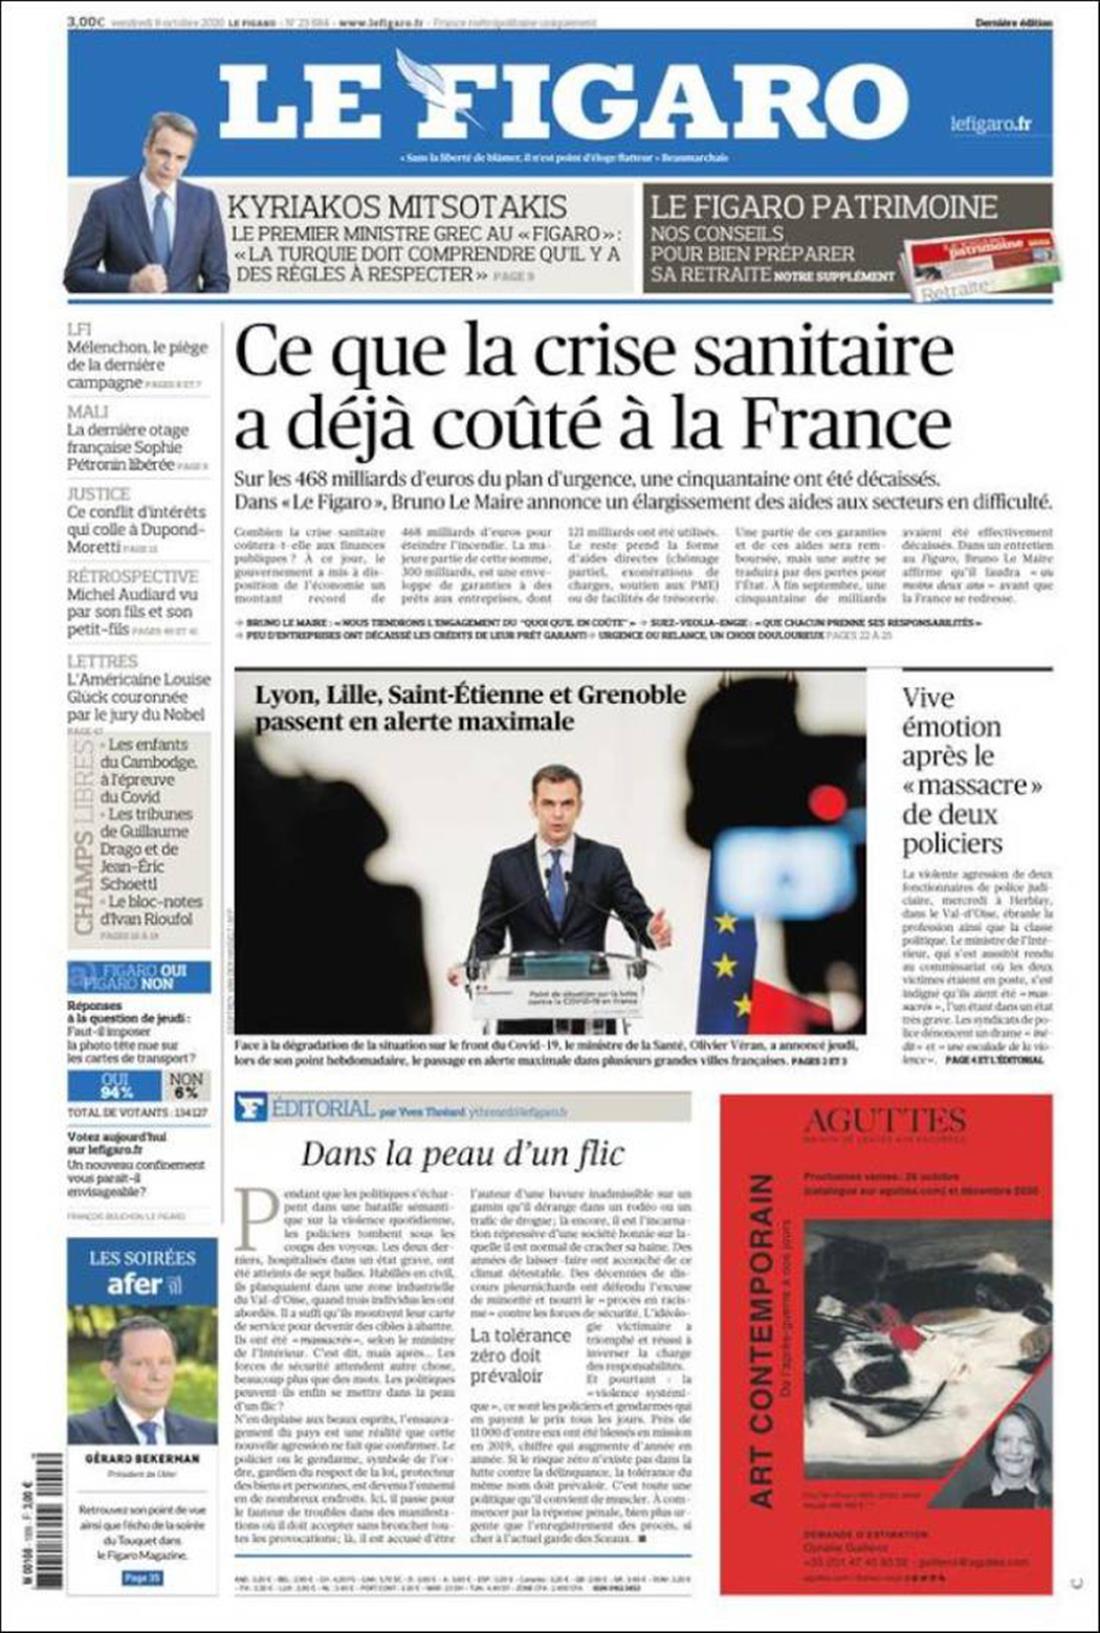 Πρωτοσέλιδο Le Figaro